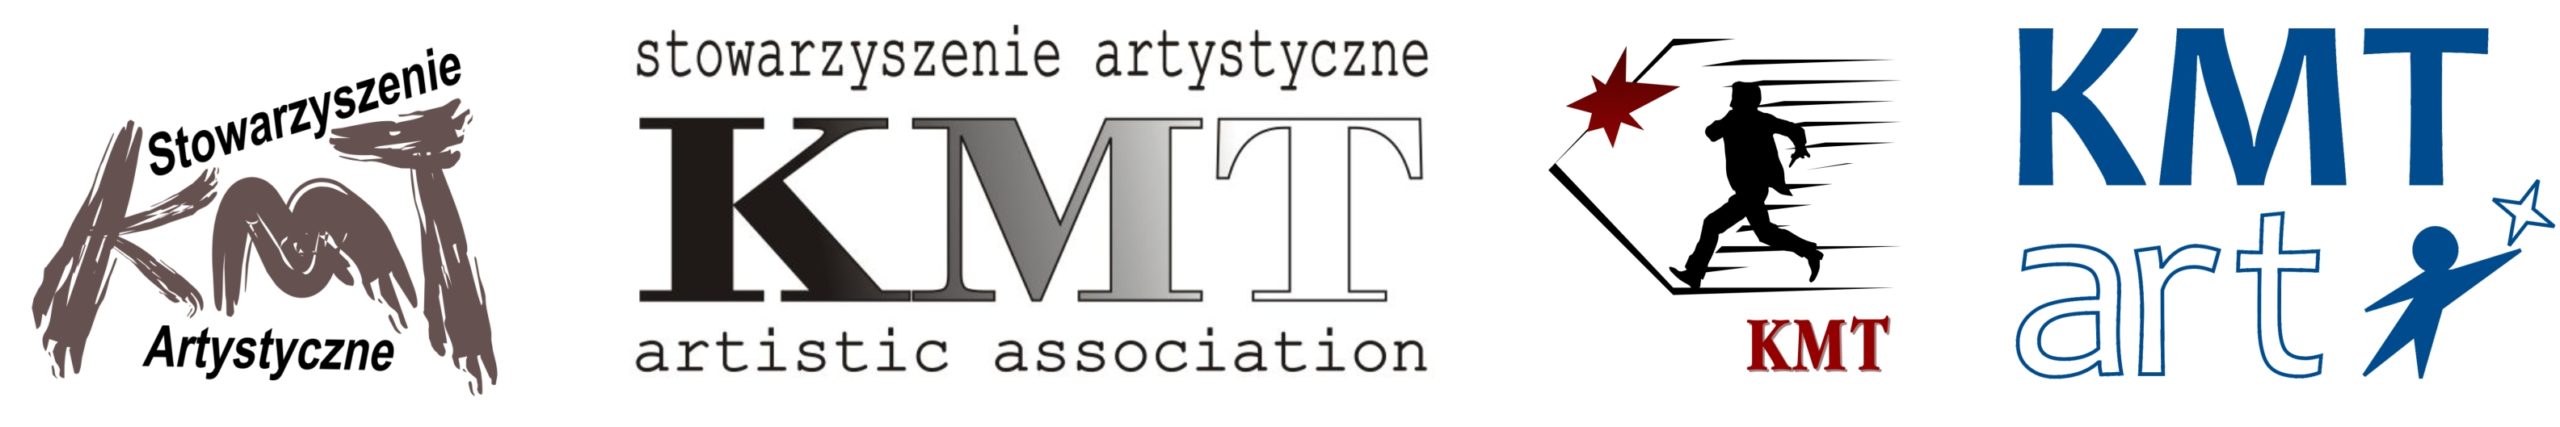 KMT_logos